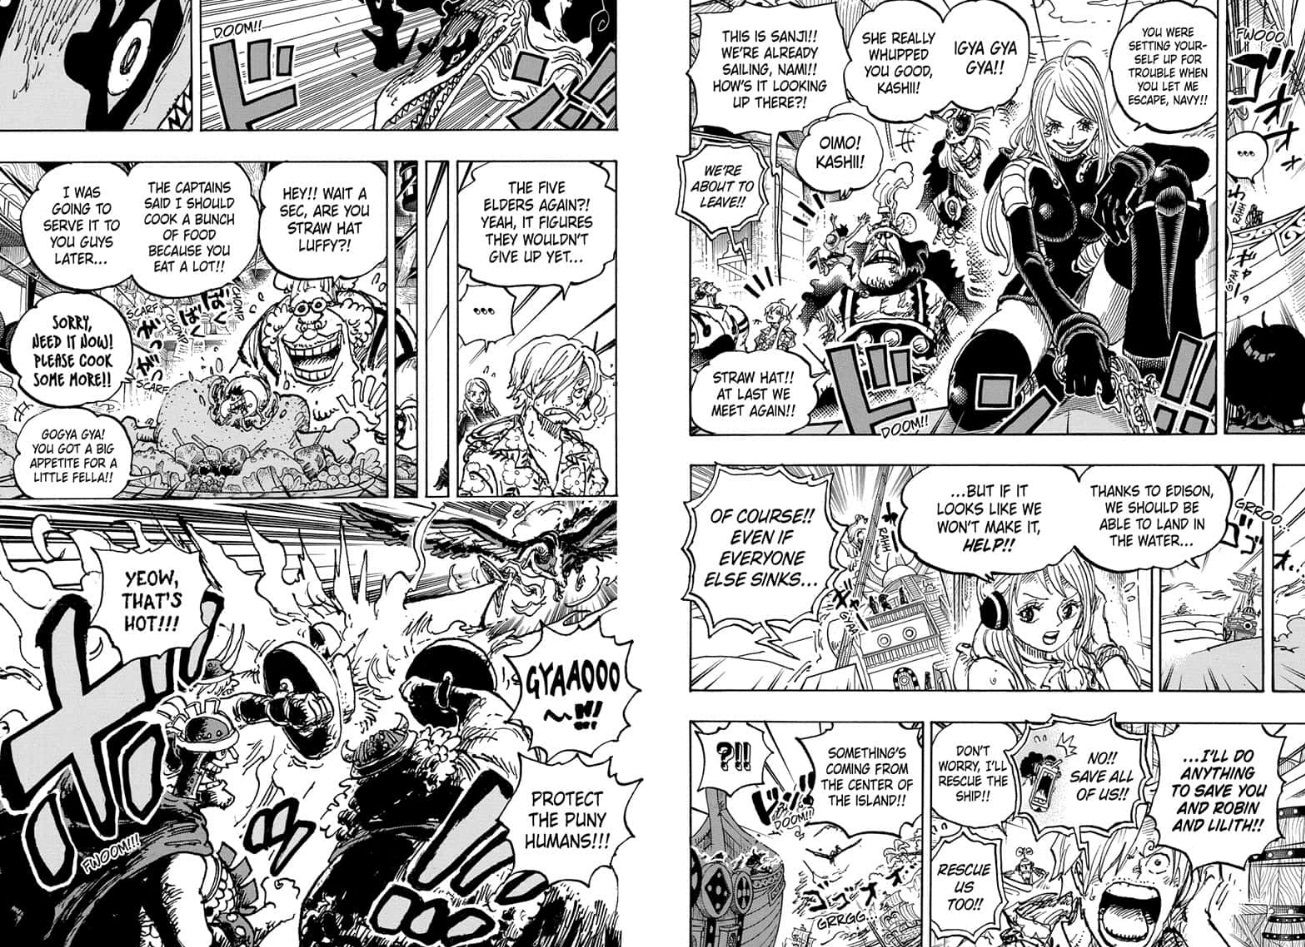 Глава 1118 One Piece раскрывает новые способности Бонни